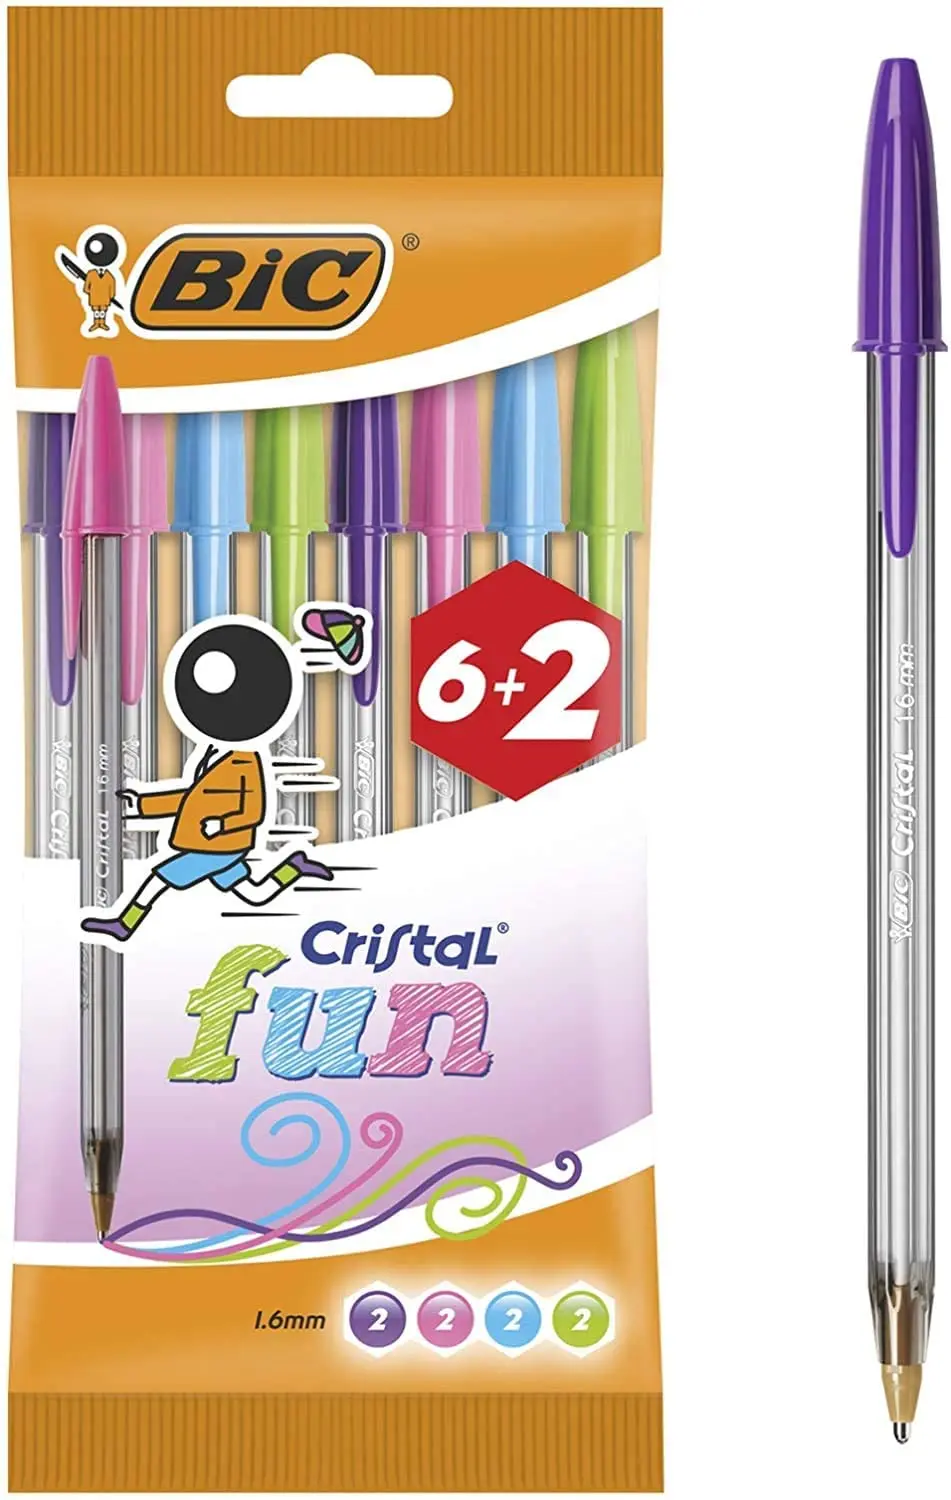 Bic Cristal Fun 6+2 Pack de 8 Boligrafos de Bola - Punta Redonda de 1.6mm - Trazo 0.42mm - Tinta con